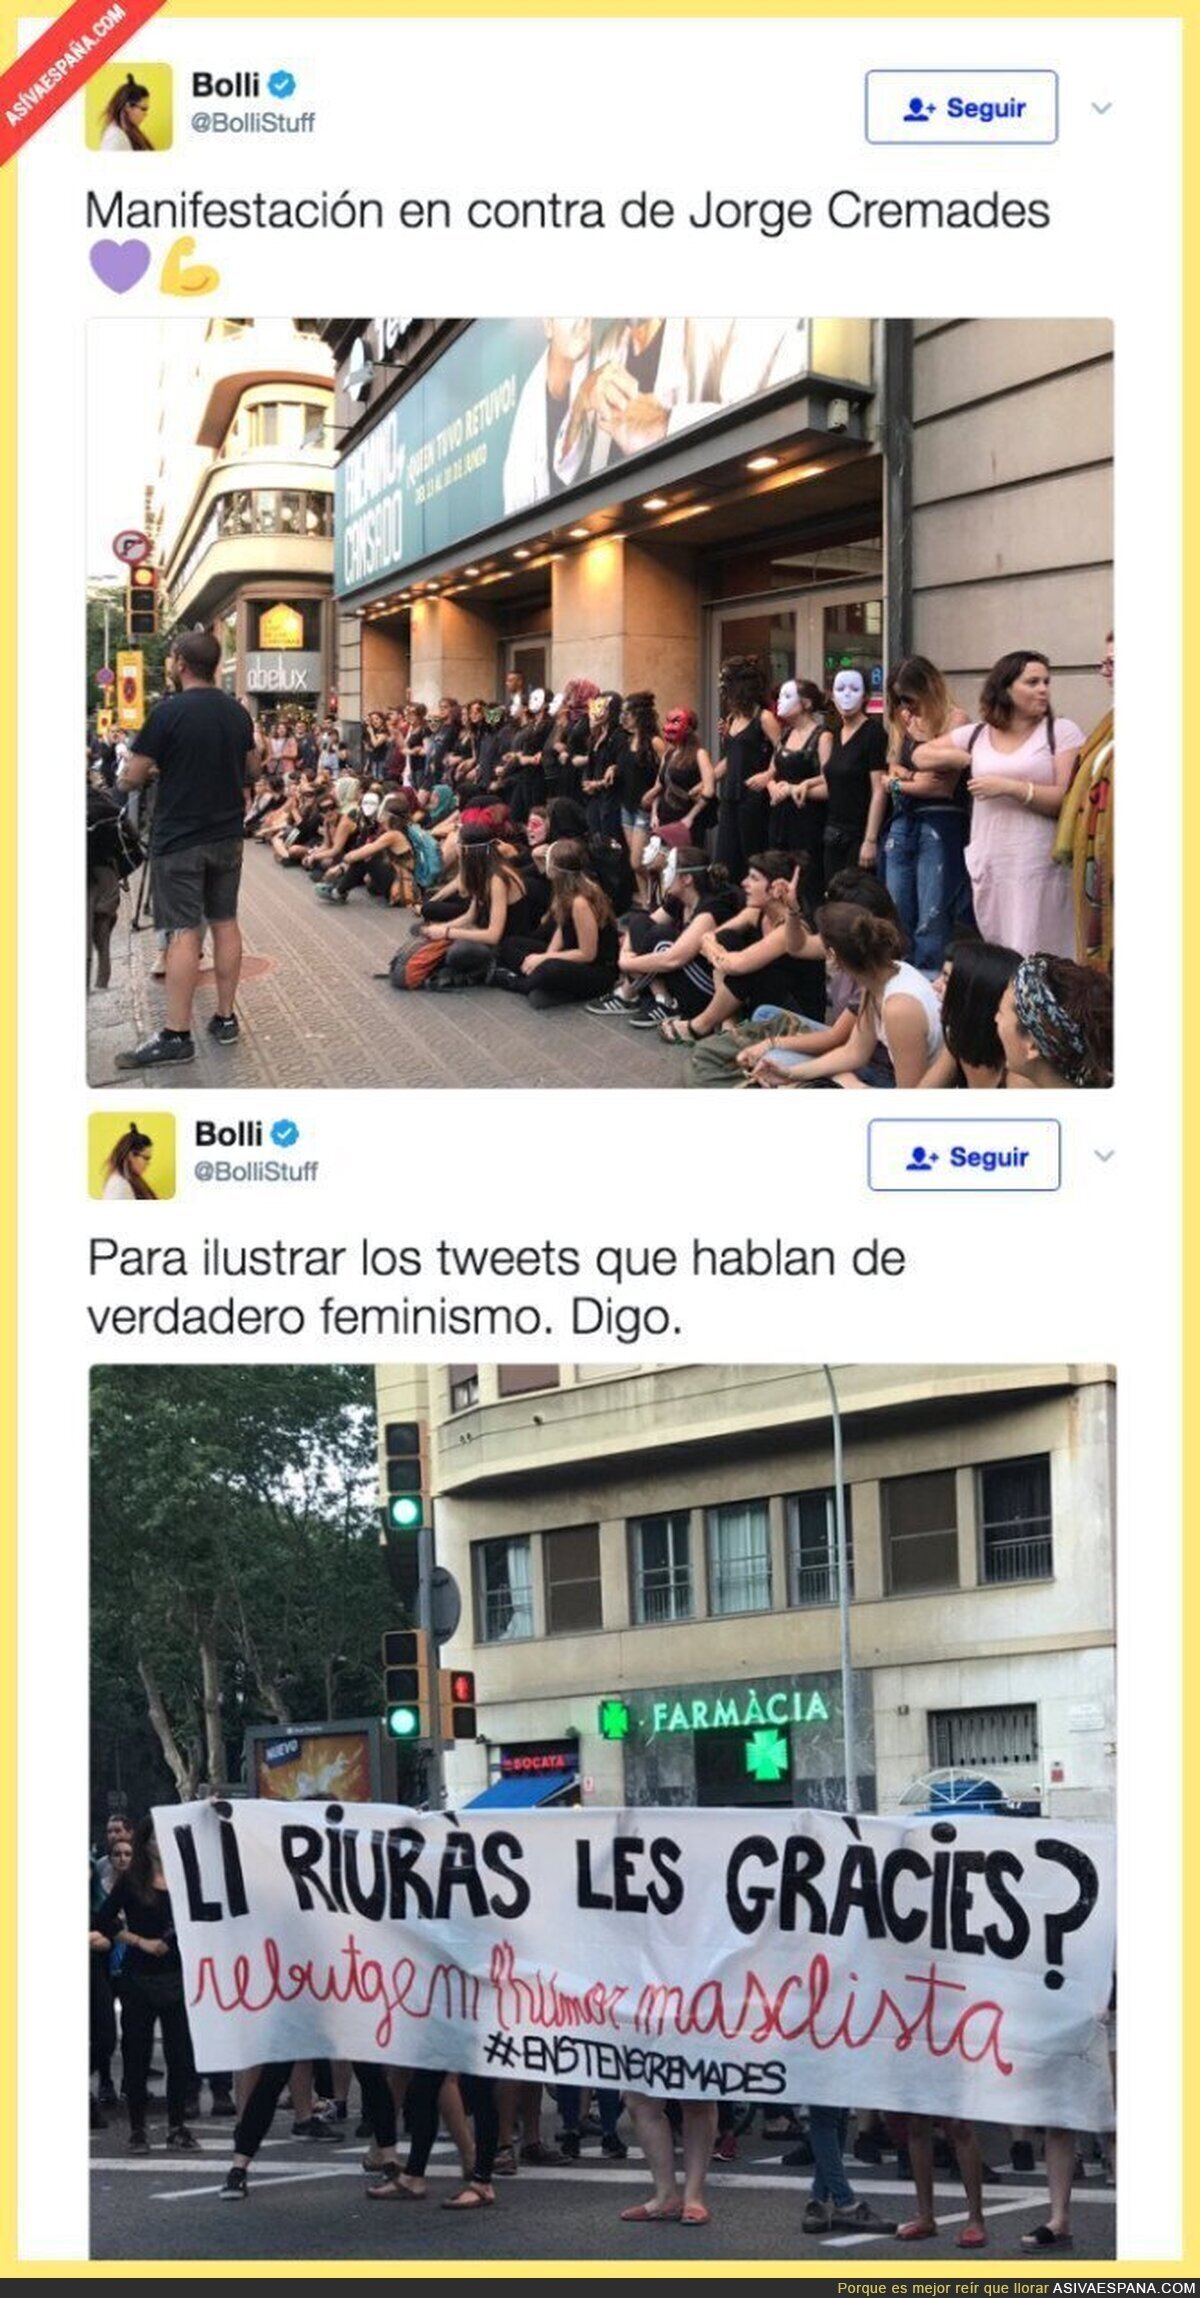 La enorme manifestación feminista contra Jorge Cremades en Barcelona